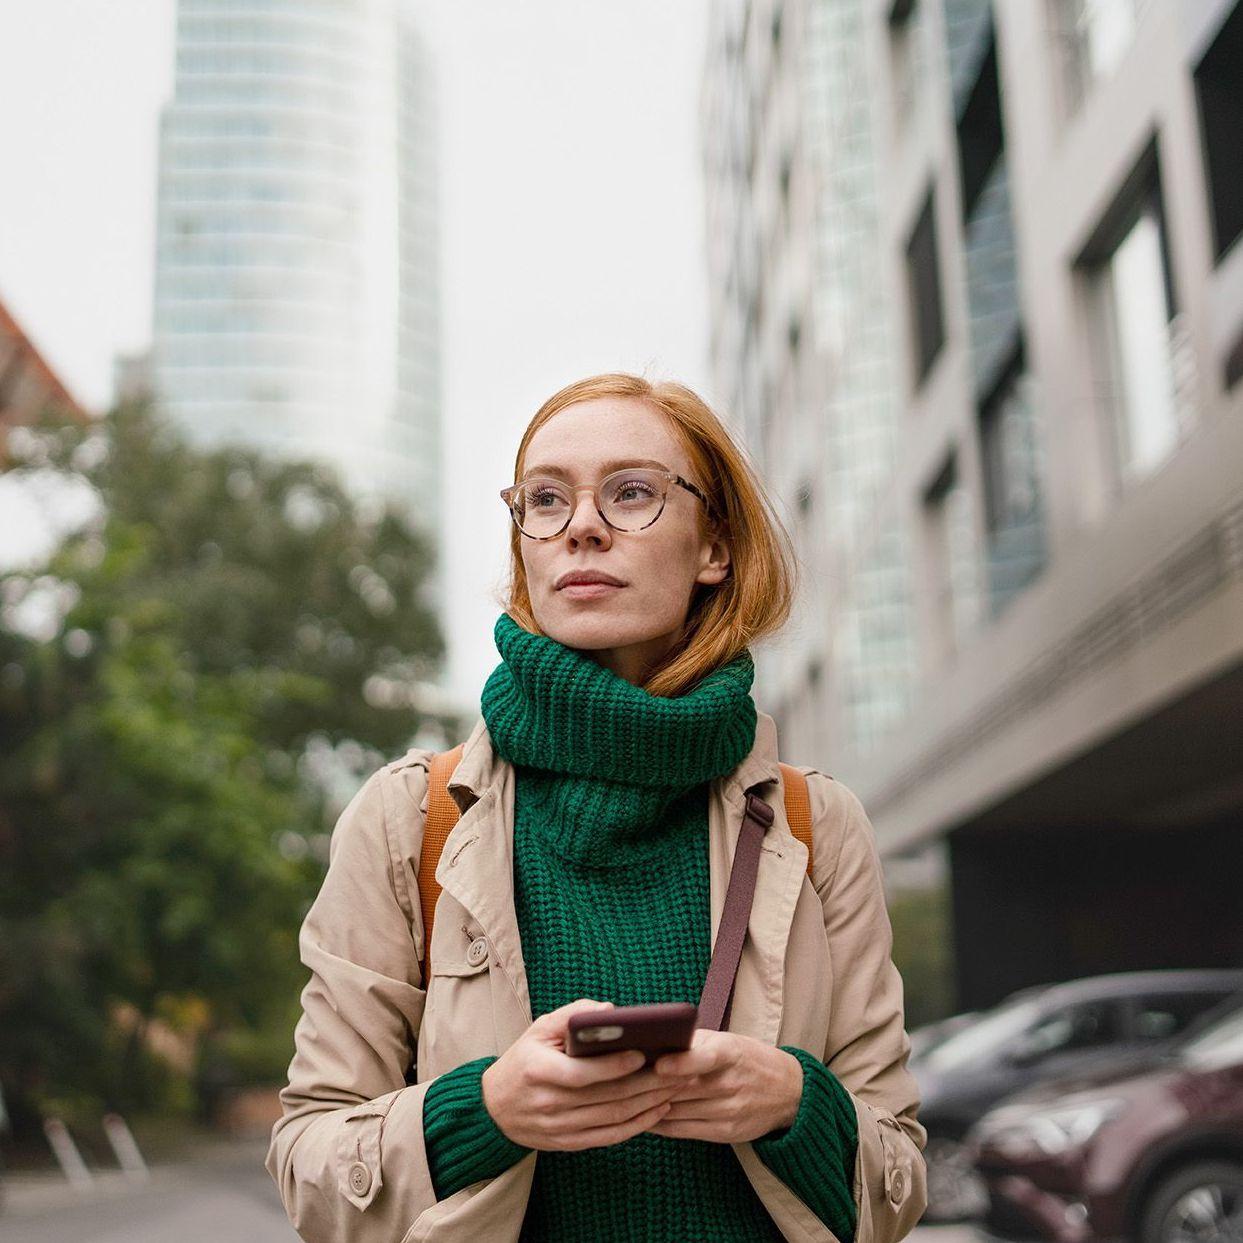 Einer herbstlich gekleidete Frau mit einem Handy in der Hand läuft durch eine Großstadt. Sie schaut nach vorne in die Ferne. Im Hintergrund zeichnen sich Hochhäuser ab.